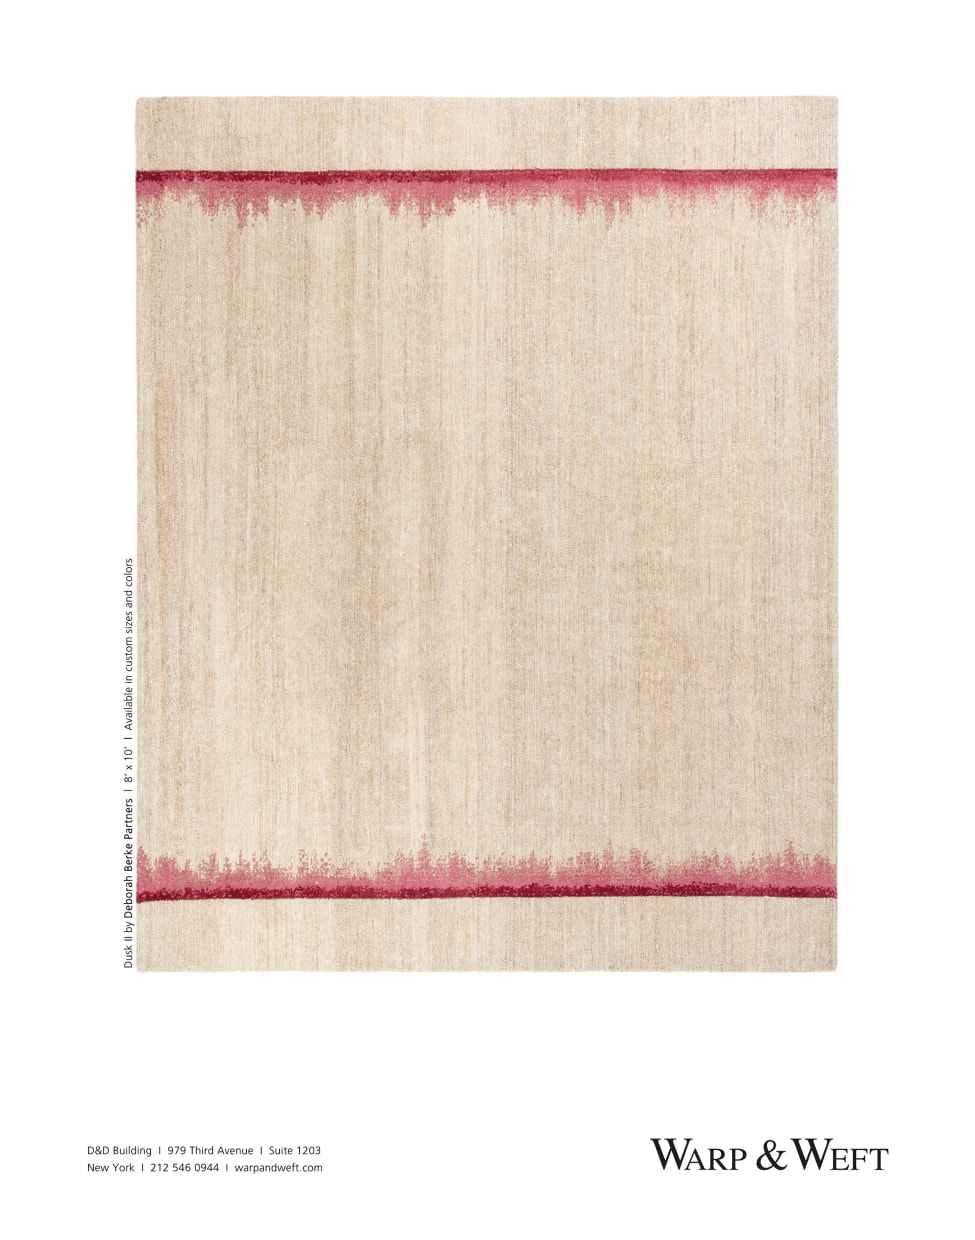 dusk 2 rouge by deborah berke partners. A wool, hemp, and silk hand-knotted rug